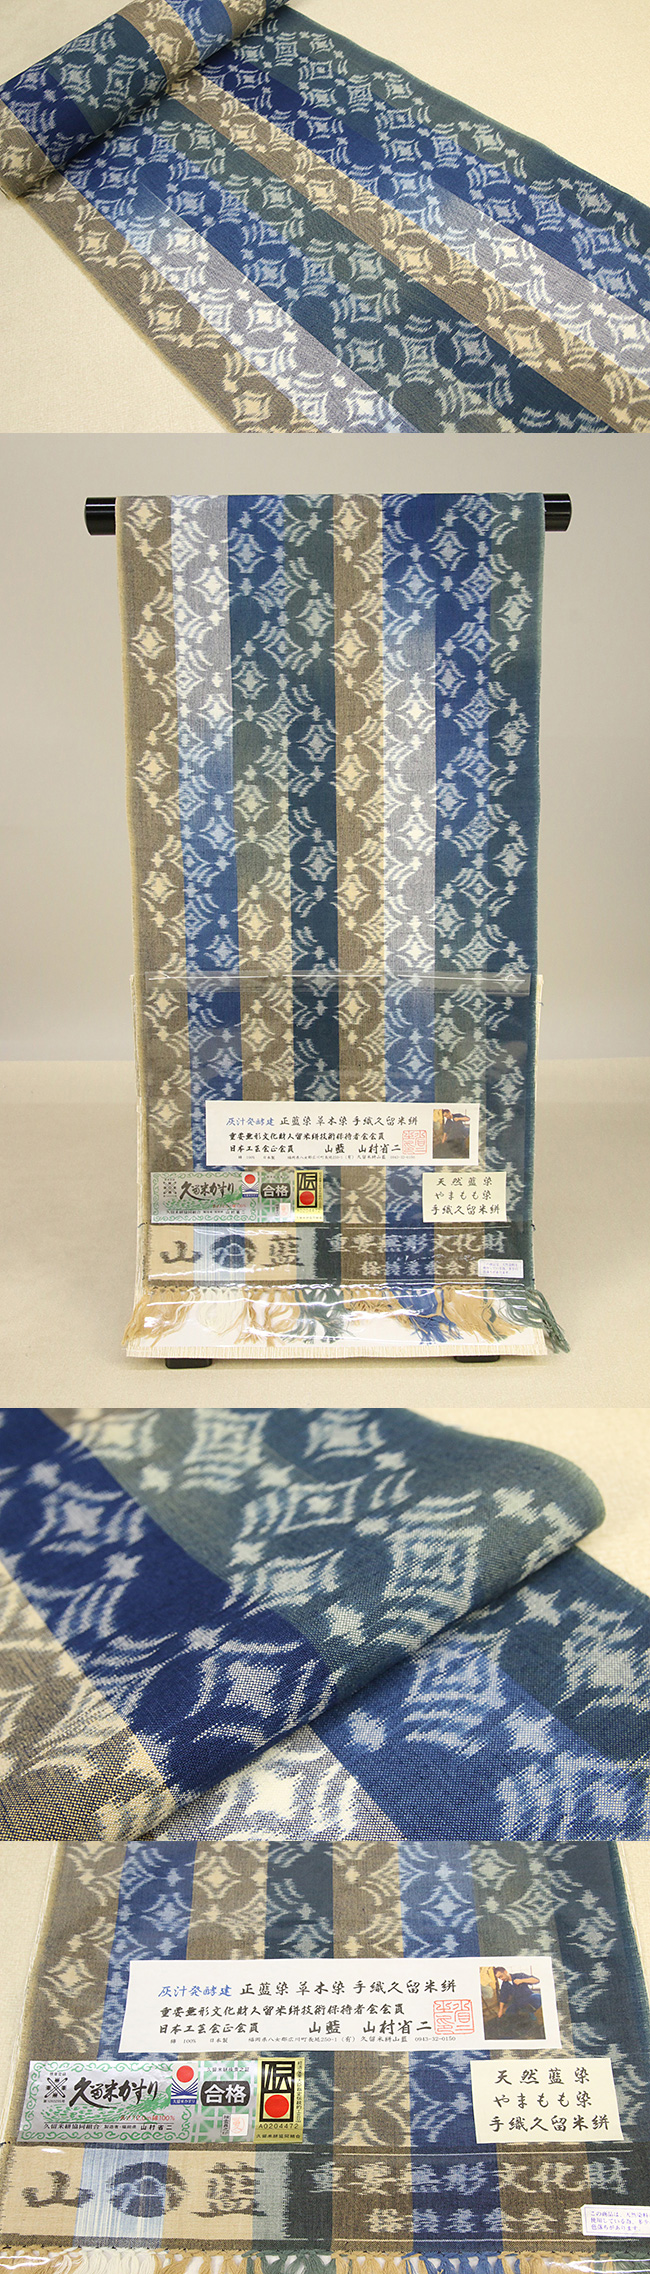 久留米絣 正藍染 草木染 木綿着物 オーダー仕立付き 手織り 菱形 カラフル 女性にオススメ